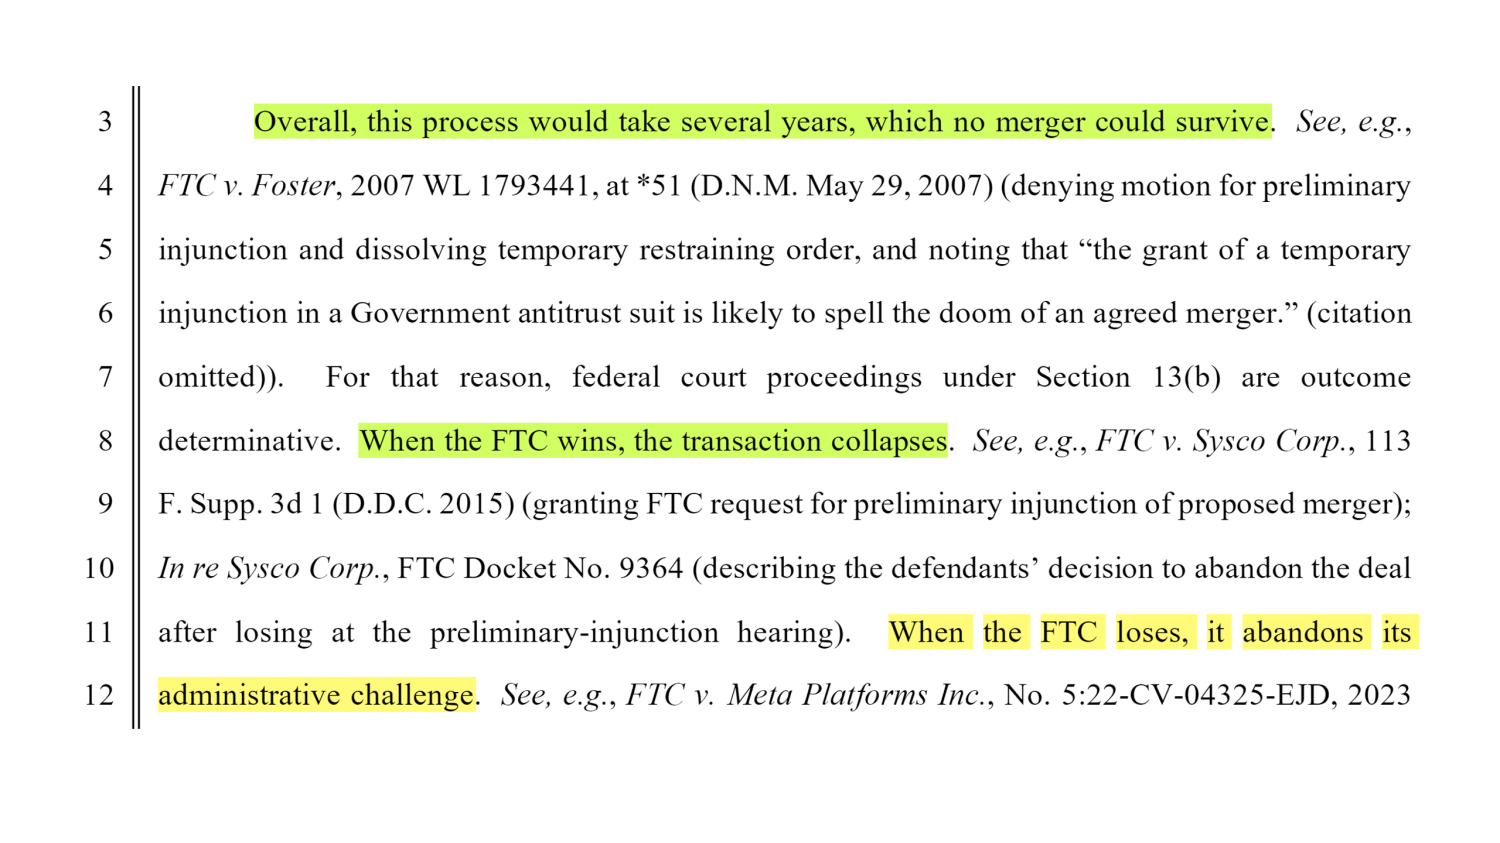 اگر دادگاه درخواست مقدماتی FTC را قبول کند، ممکن است مایکروسافت از خرید اکتیویژن منصرف شود